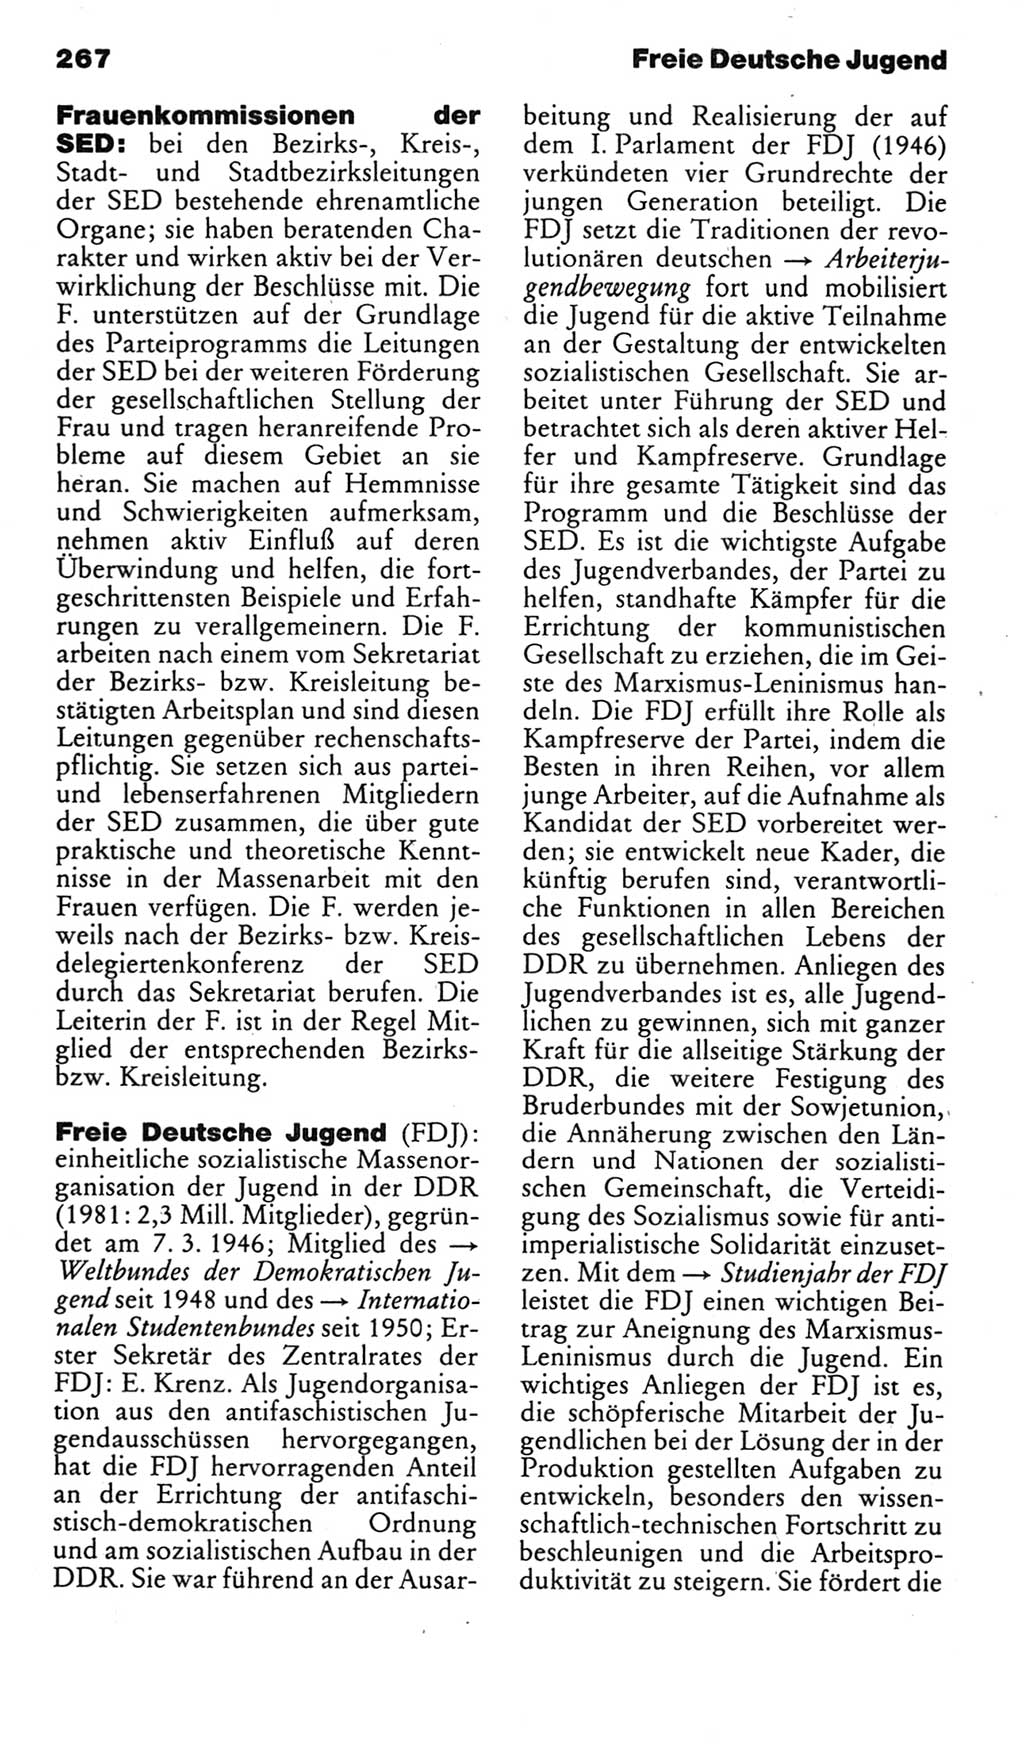 Kleines politisches Wörterbuch [Deutsche Demokratische Republik (DDR)] 1985, Seite 267 (Kl. pol. Wb. DDR 1985, S. 267)